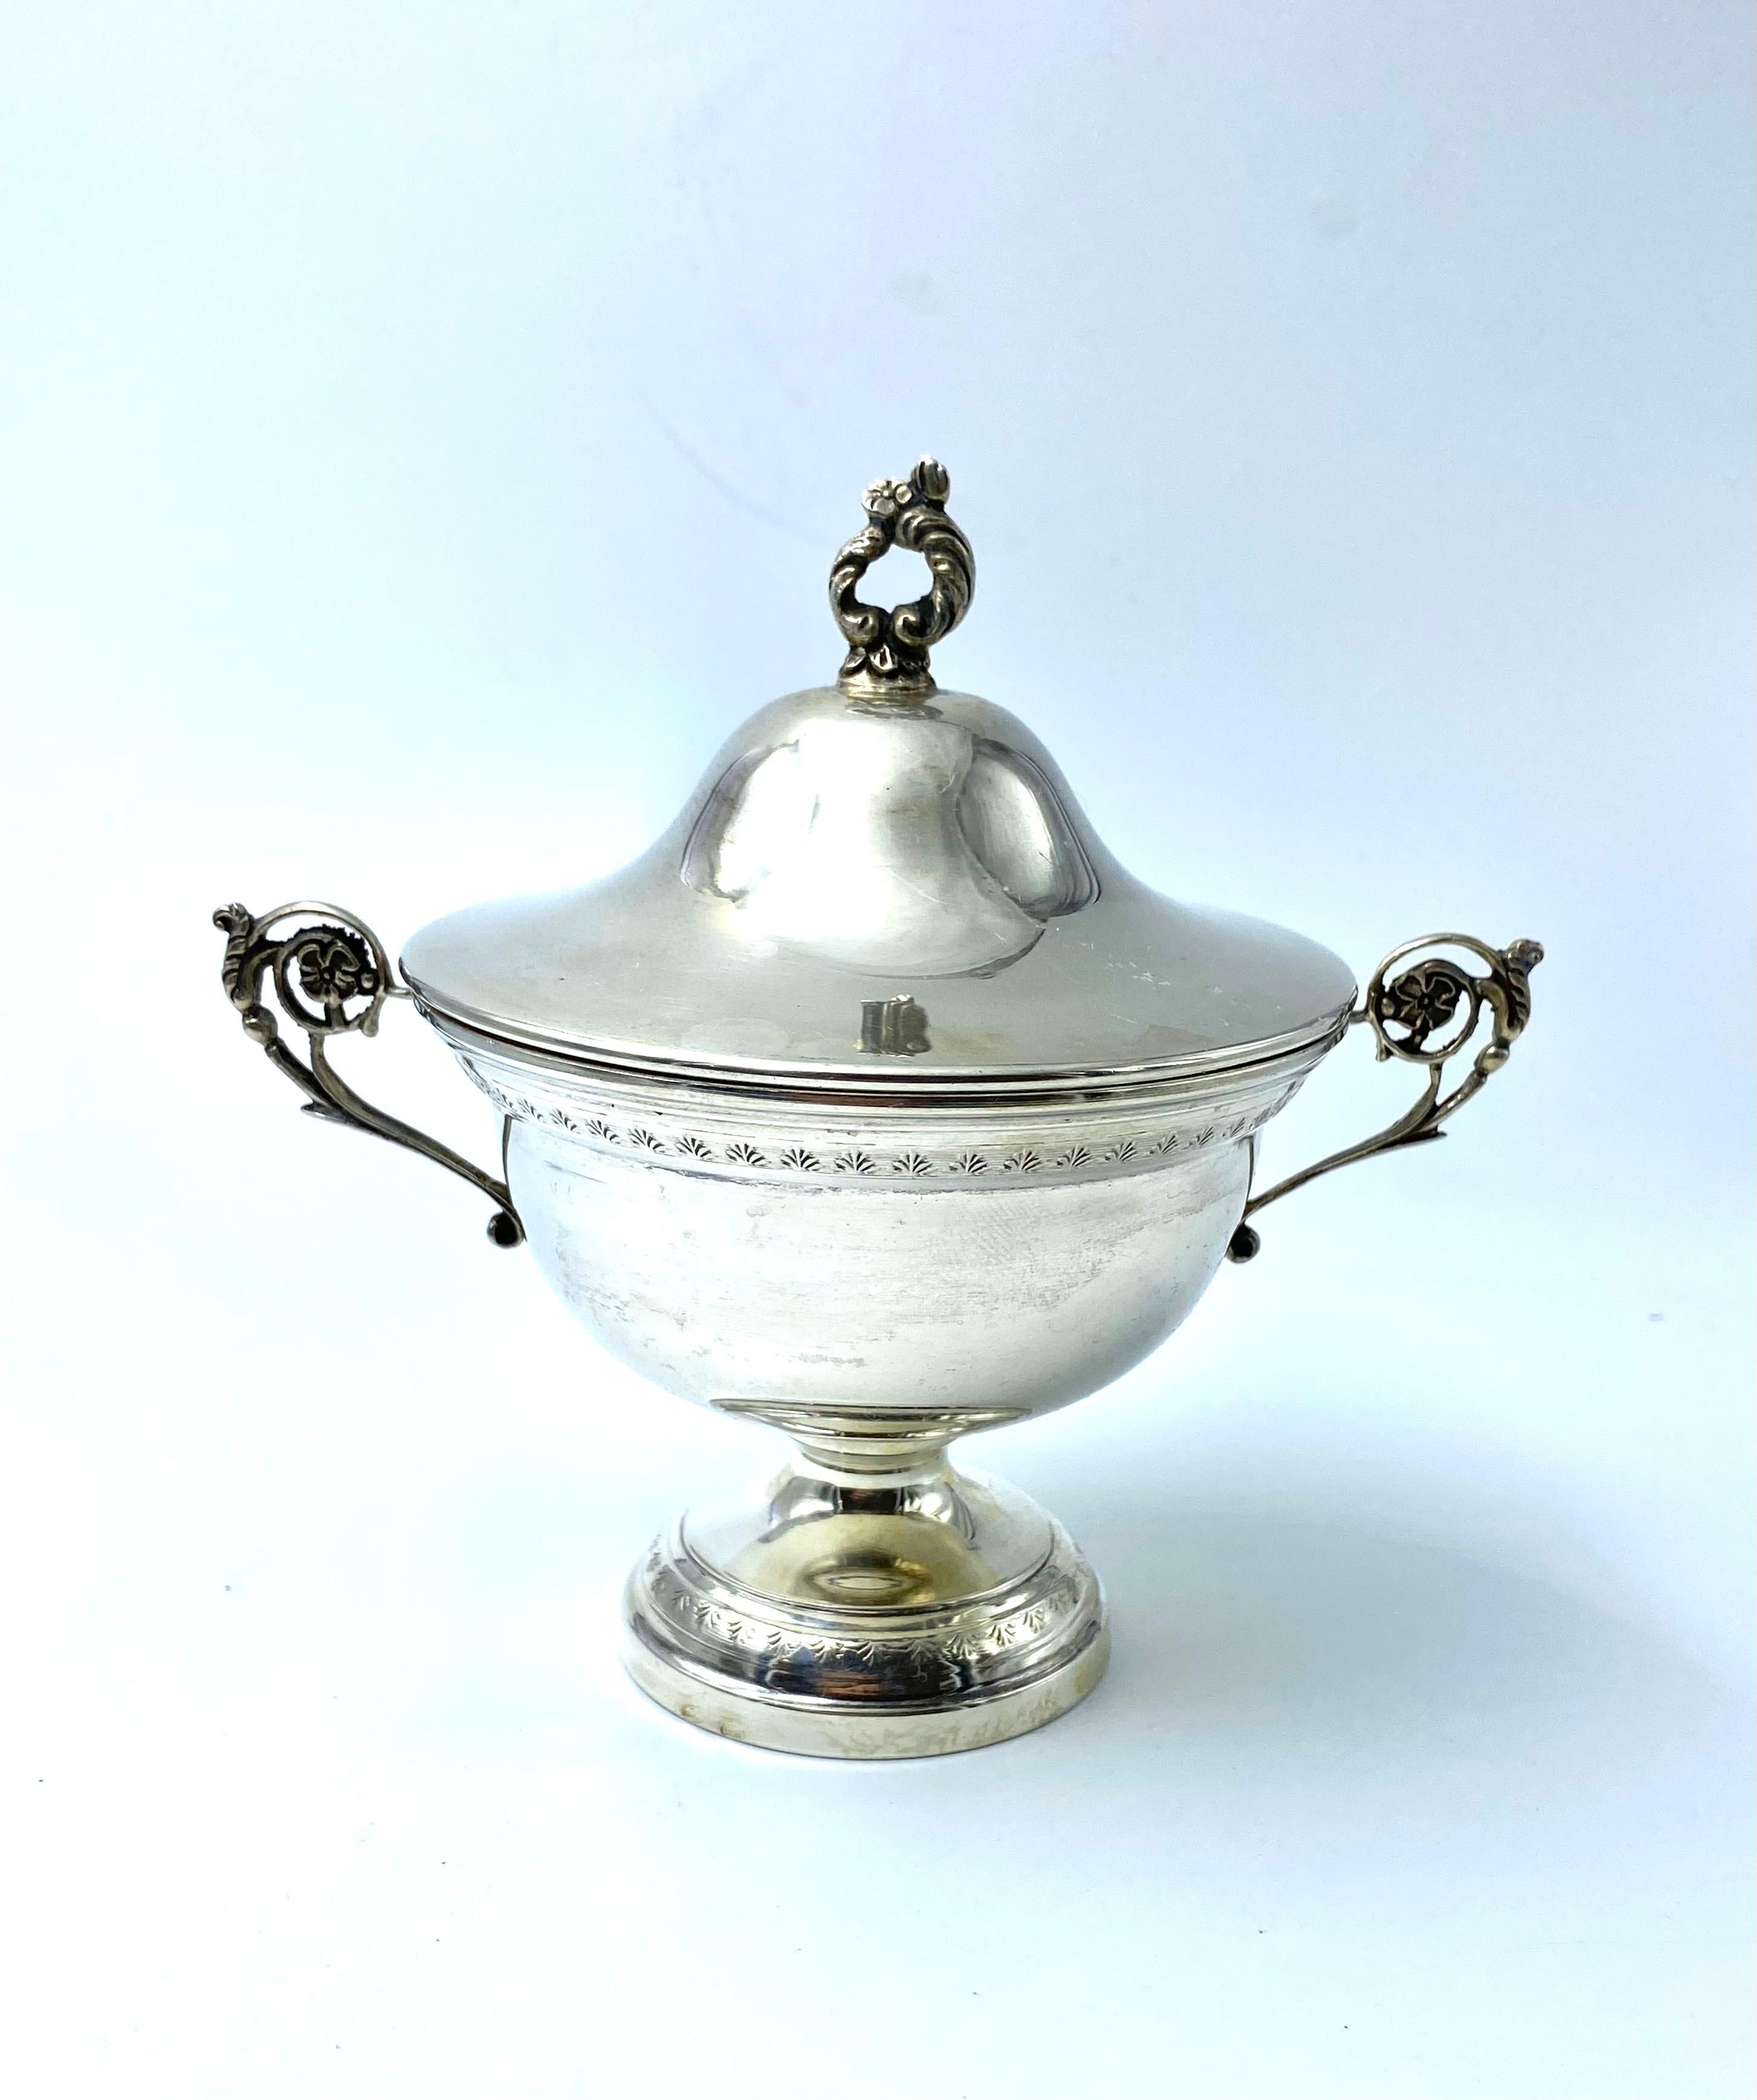 Raffiniertes polychromes Porzellan-Kaffeeservice, bestehend aus 6 Tassen in einer silbernen Schale, wunderschön im Jugendstil gearbeitet, hergestellt von der Firma Hutshenreuther in Hohenberg (Deutschland), datiert 1914. Eine Zuckerdose, ebenfalls